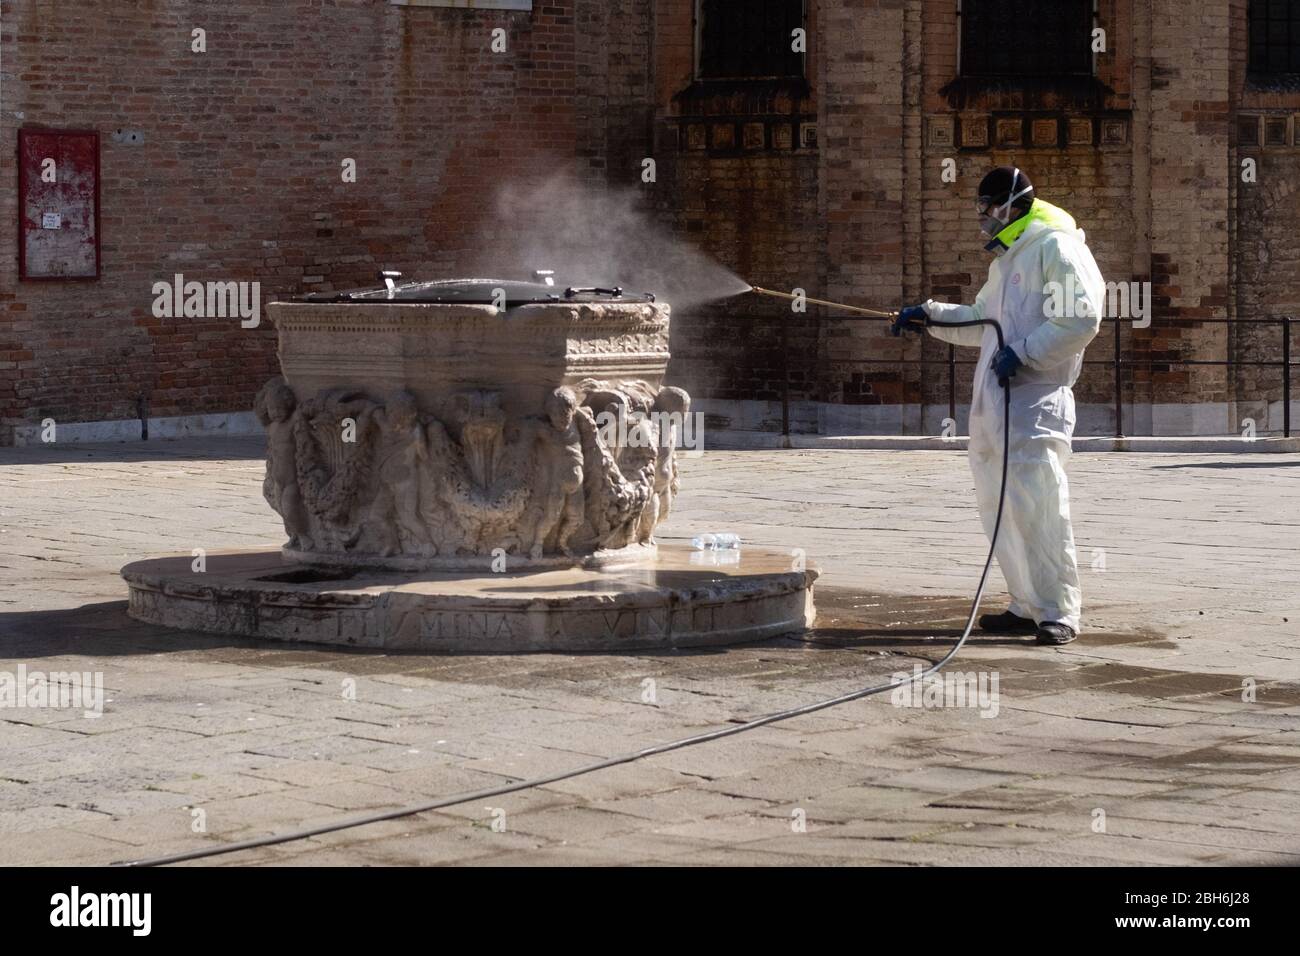 VENEZIA, ITALIA - APRILE 2020: Un operaio sanitizza bene di Venezia durante la chiusura nazionale per la pandemia Covid-19. Foto Stock